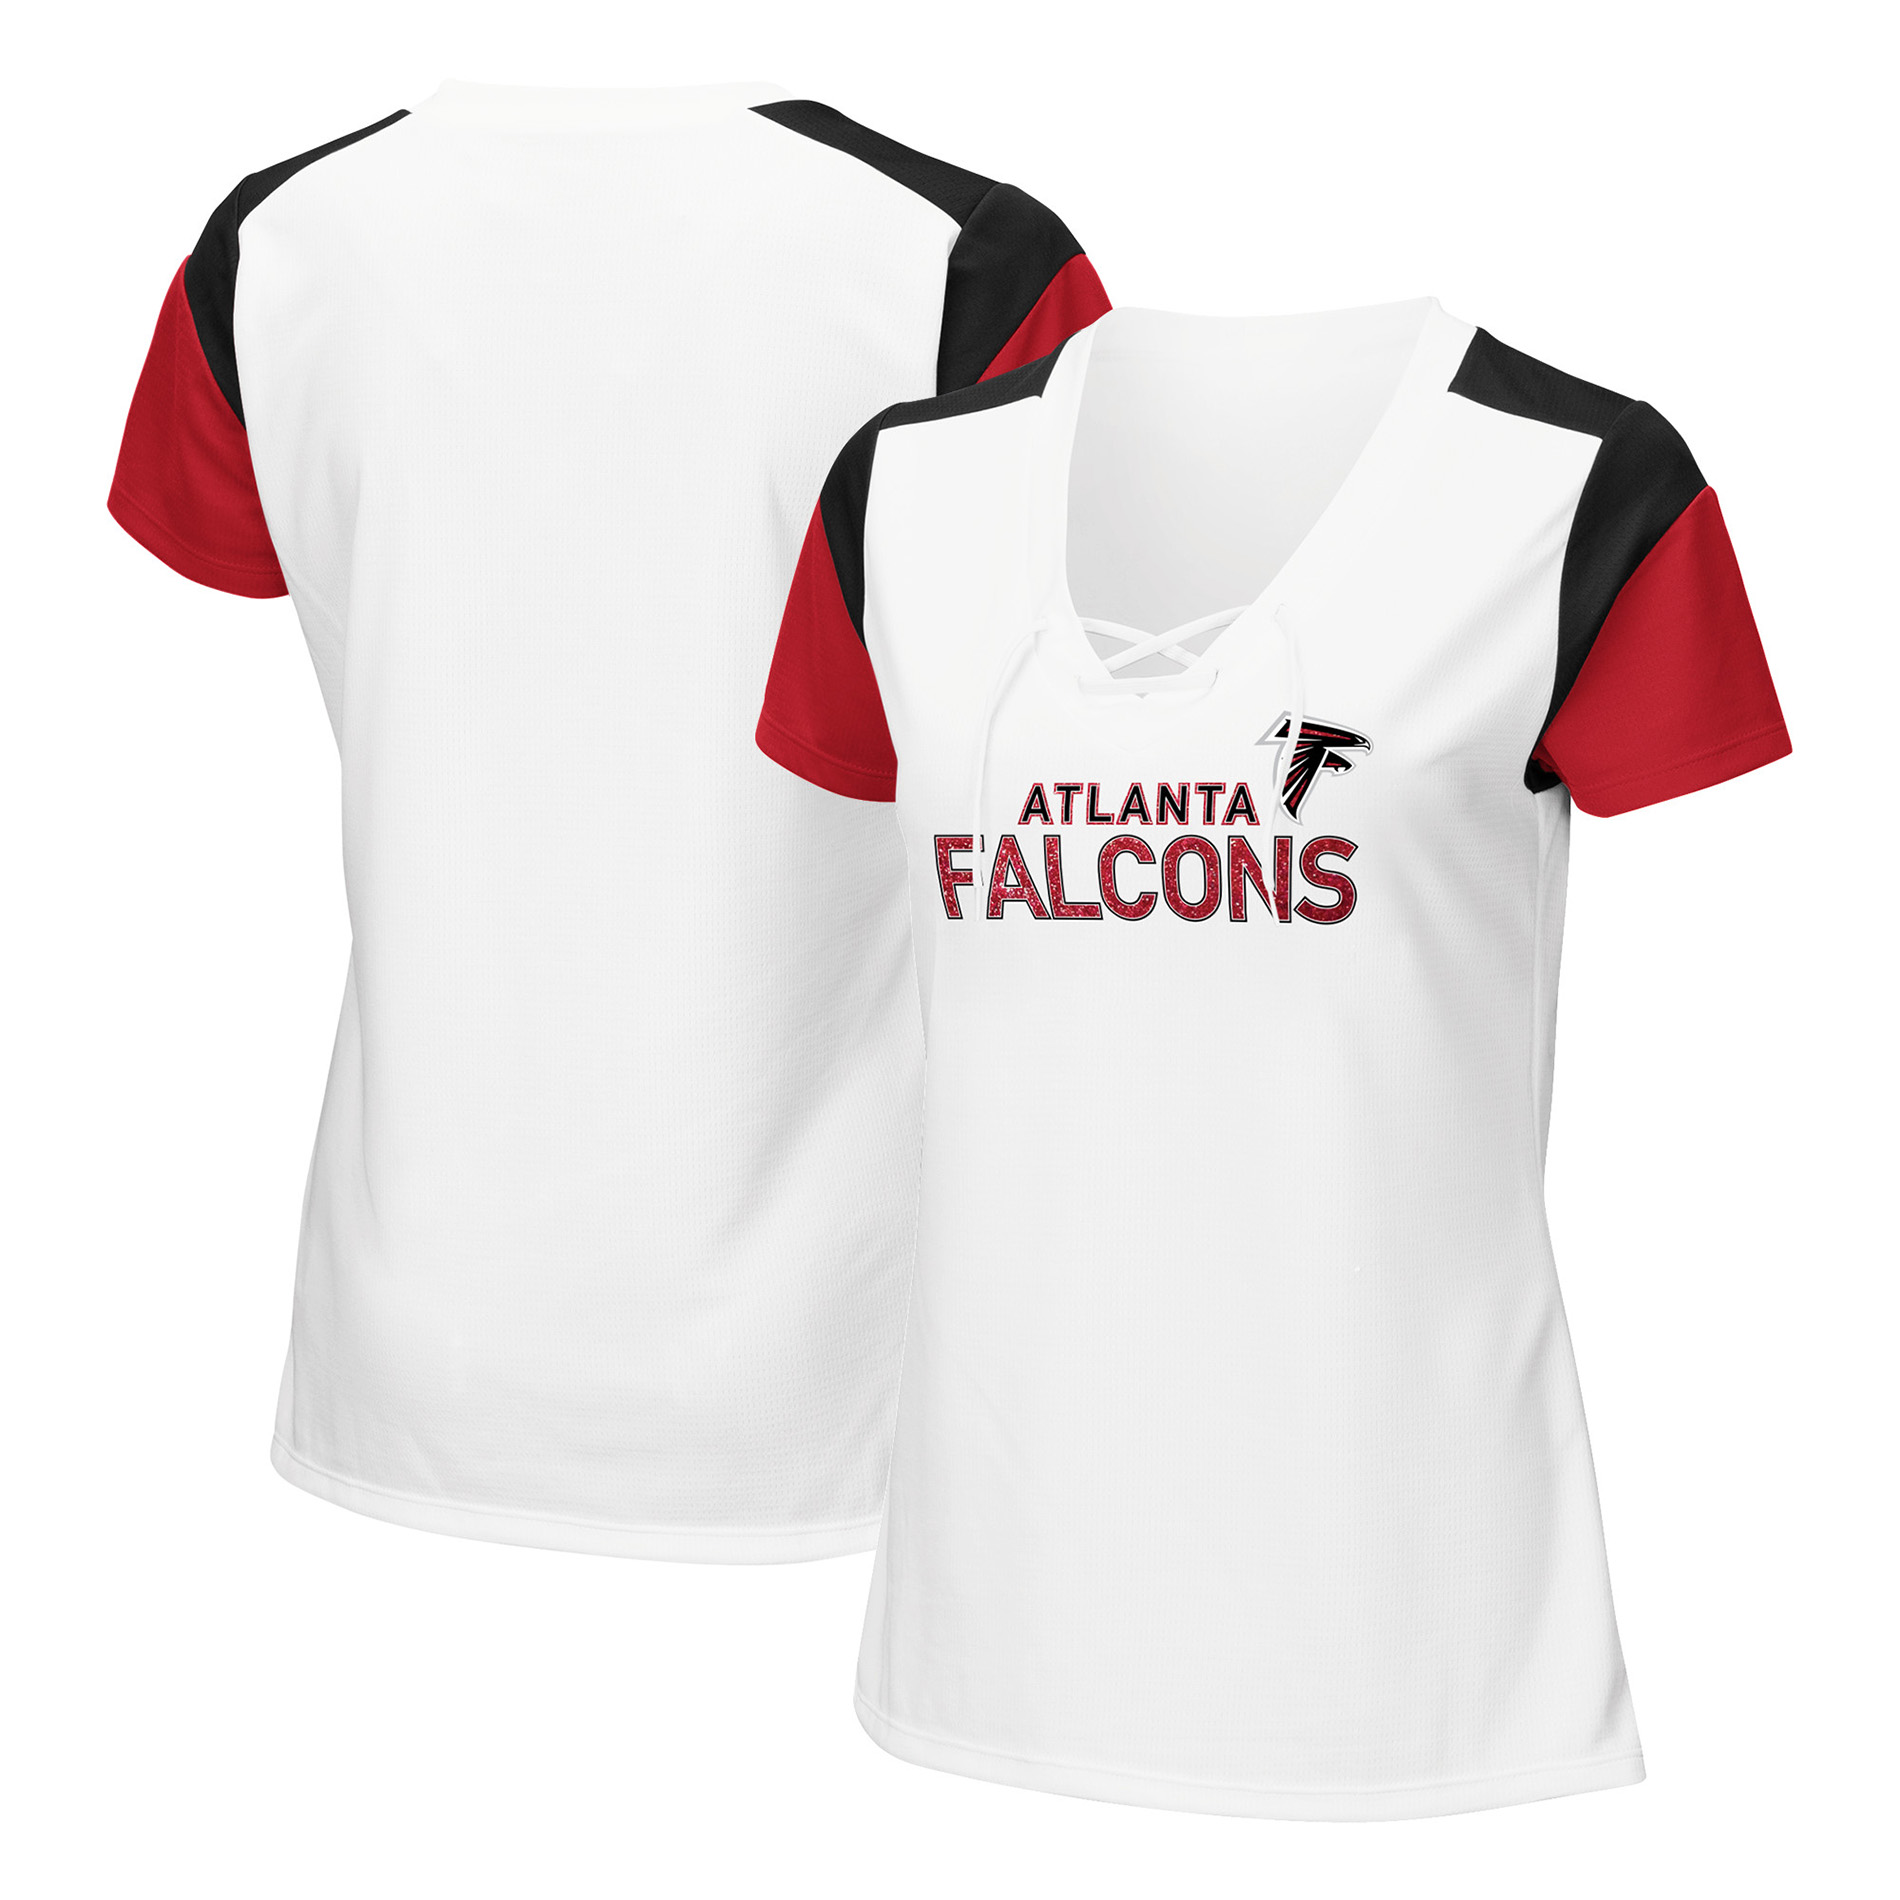 falcons shirt womens